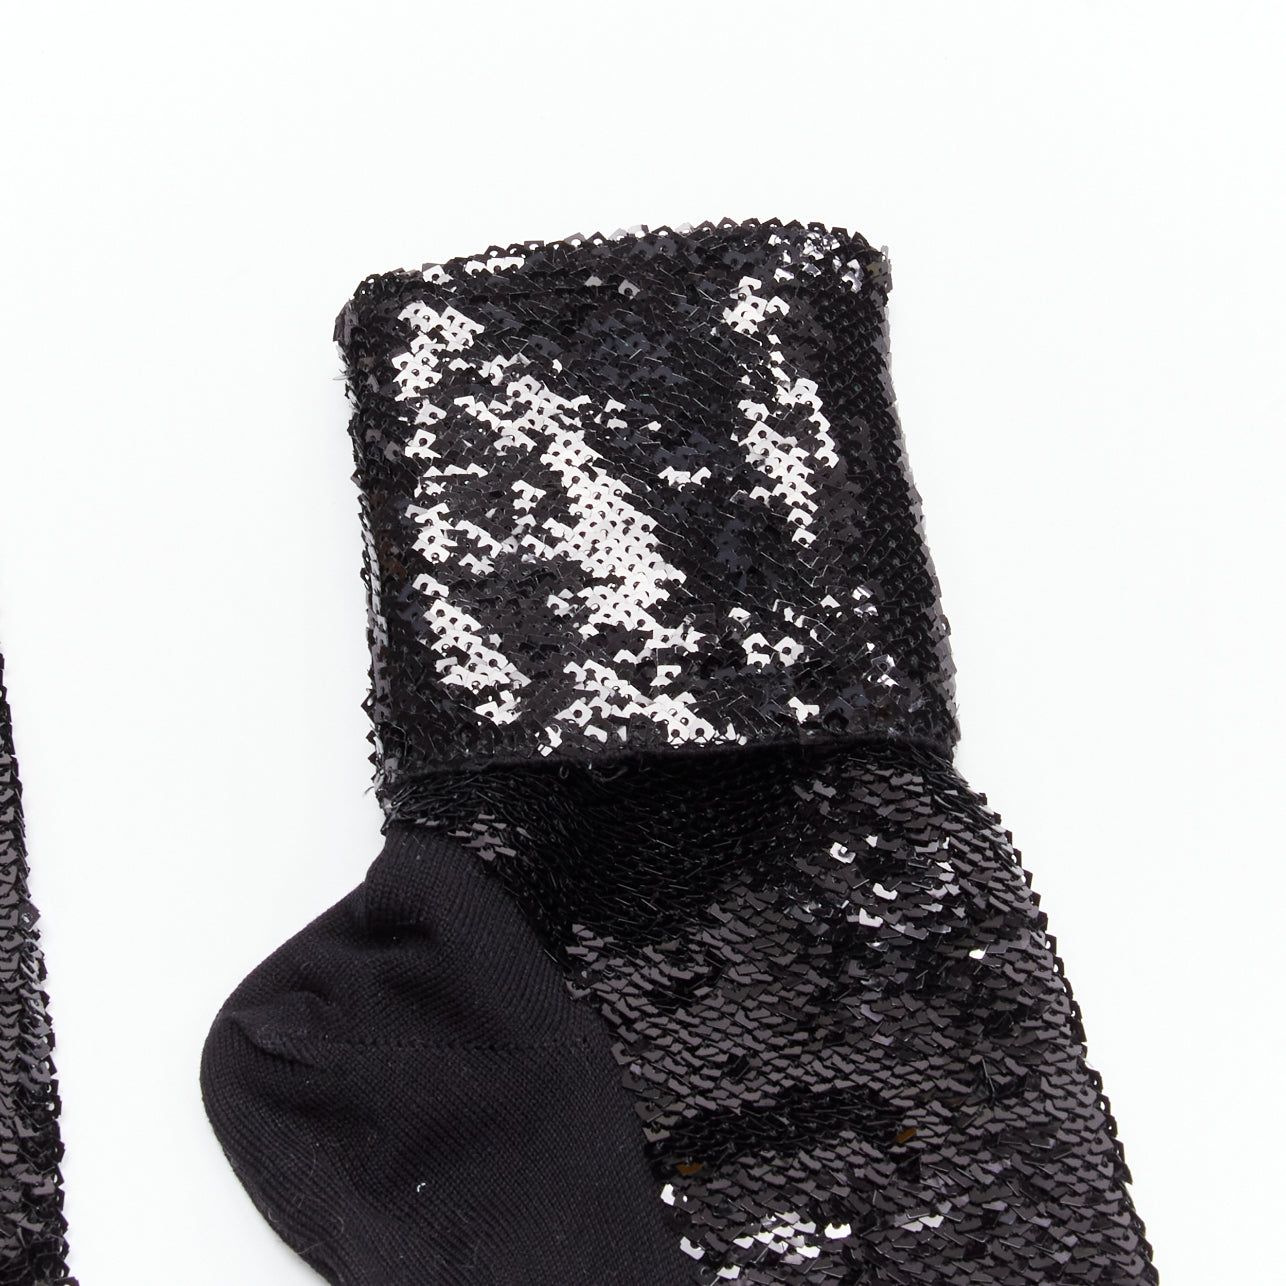 Saint Laurent Paris SAINT LAURENT 2016 black sequins cotton blend rolled cuffed socks EUR38 Size ONE SIZE - 2 Preview